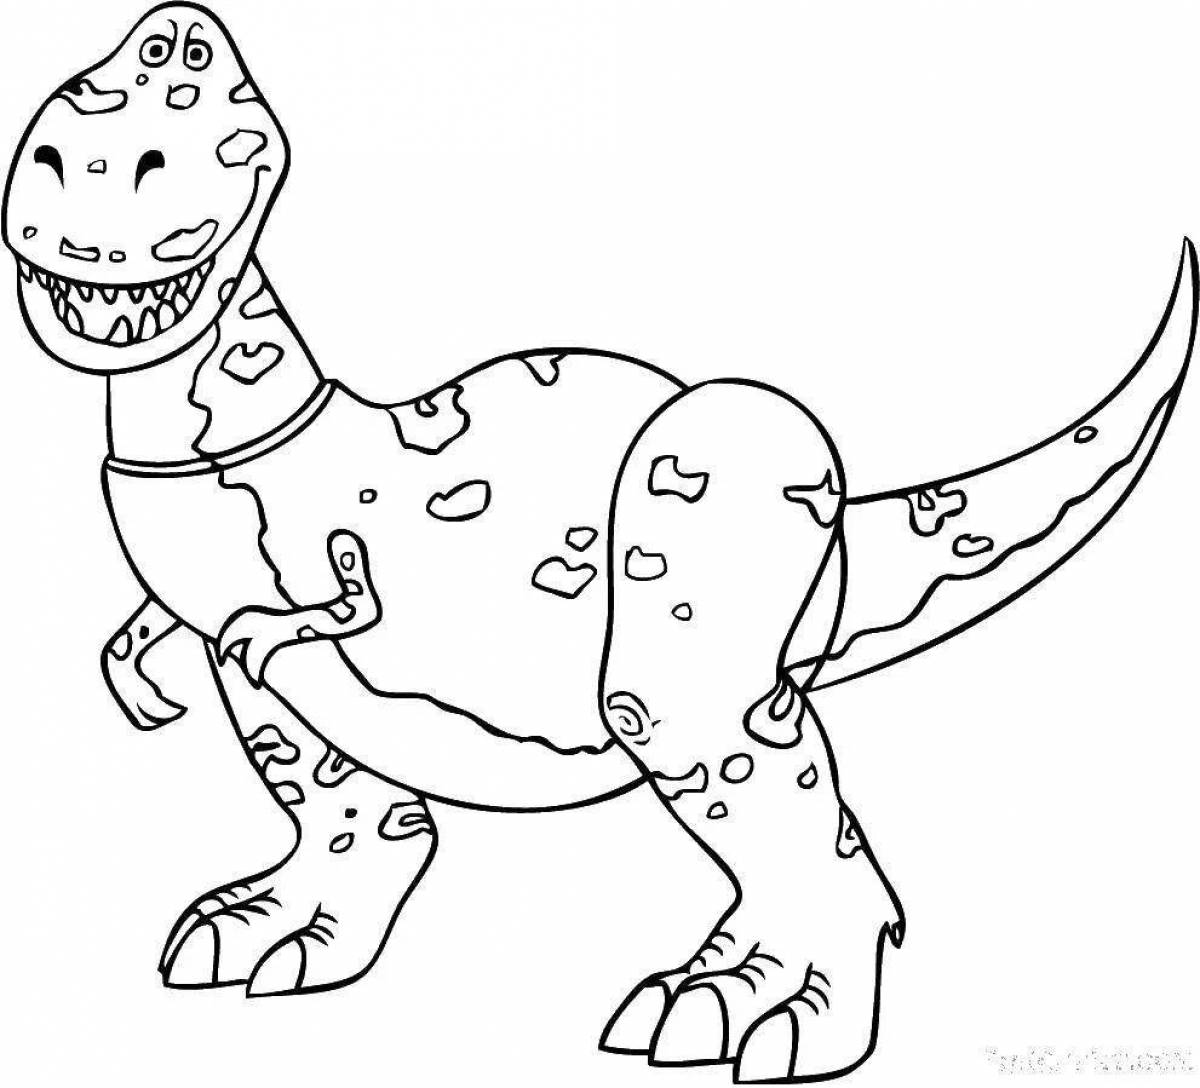 Tarbosaurus cartoon #4